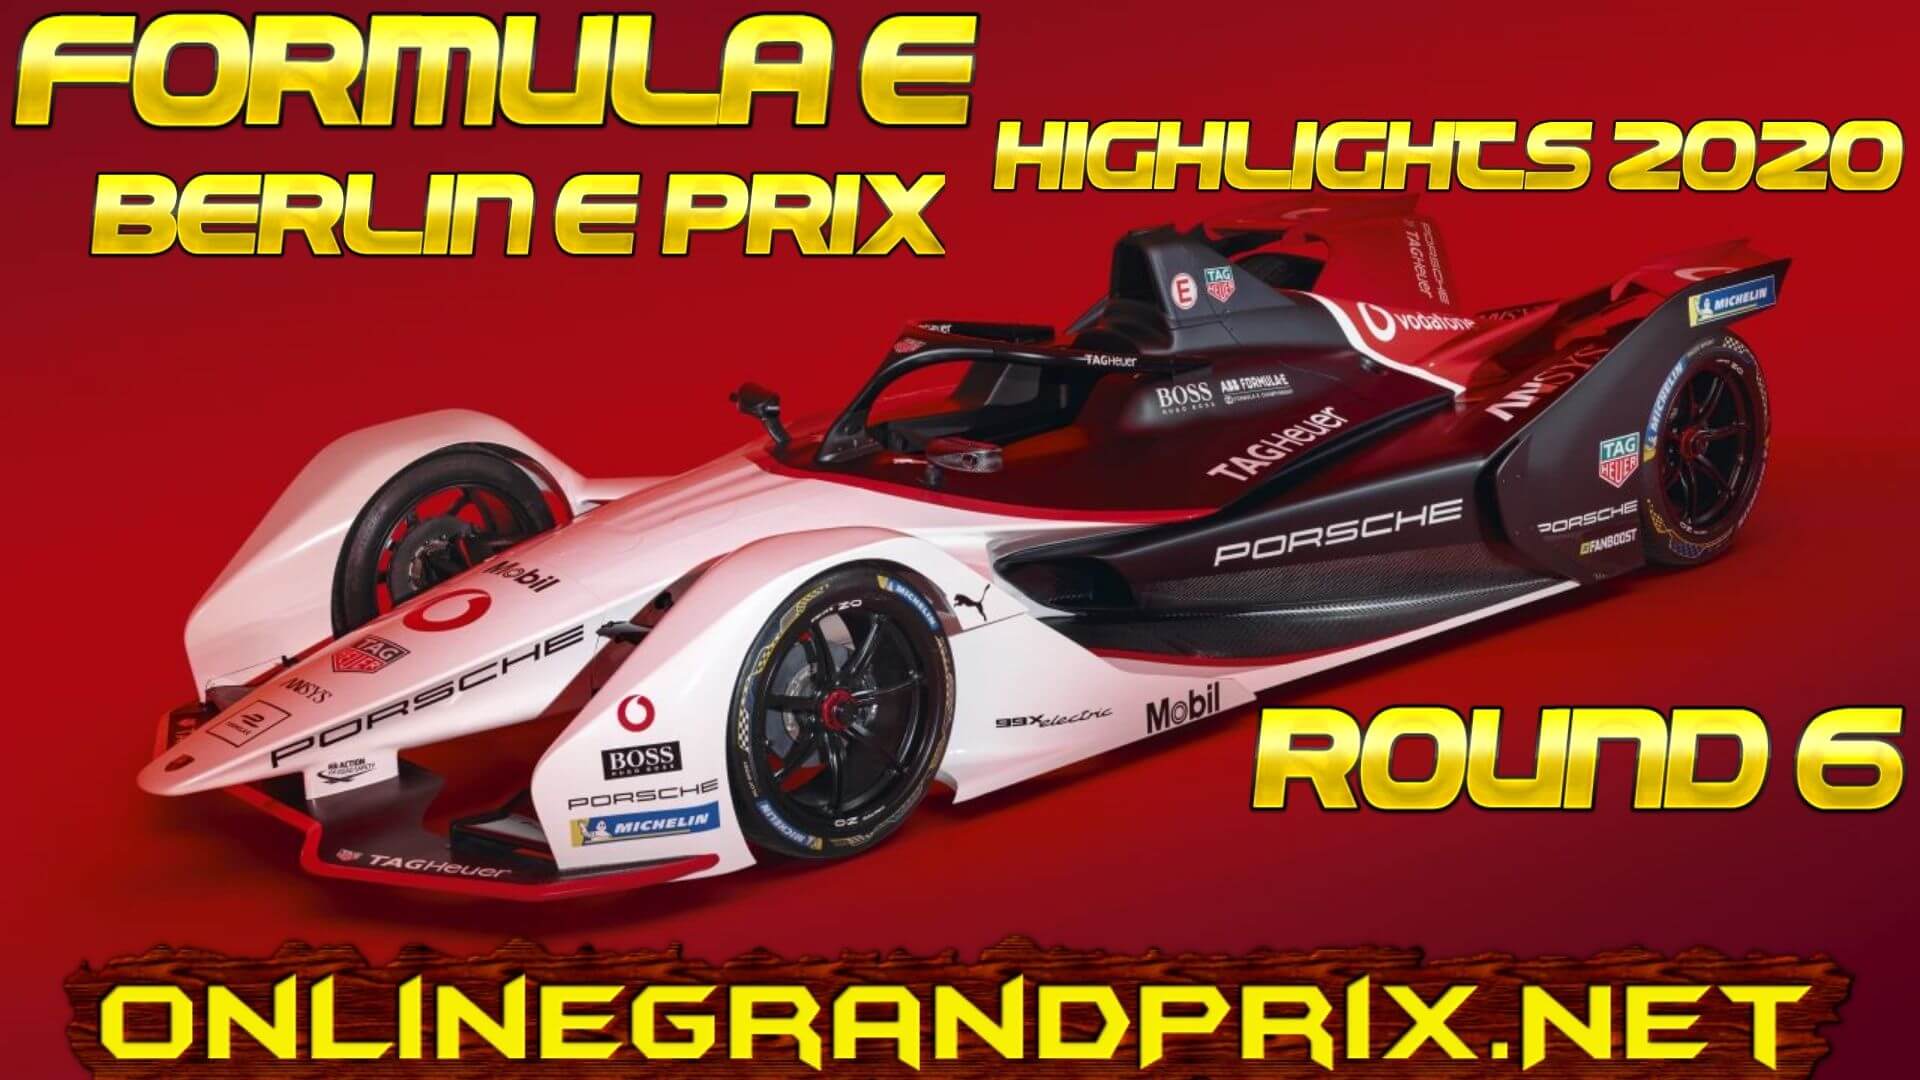 Berlin E Prix Formula E Highlights 2020 Round 6